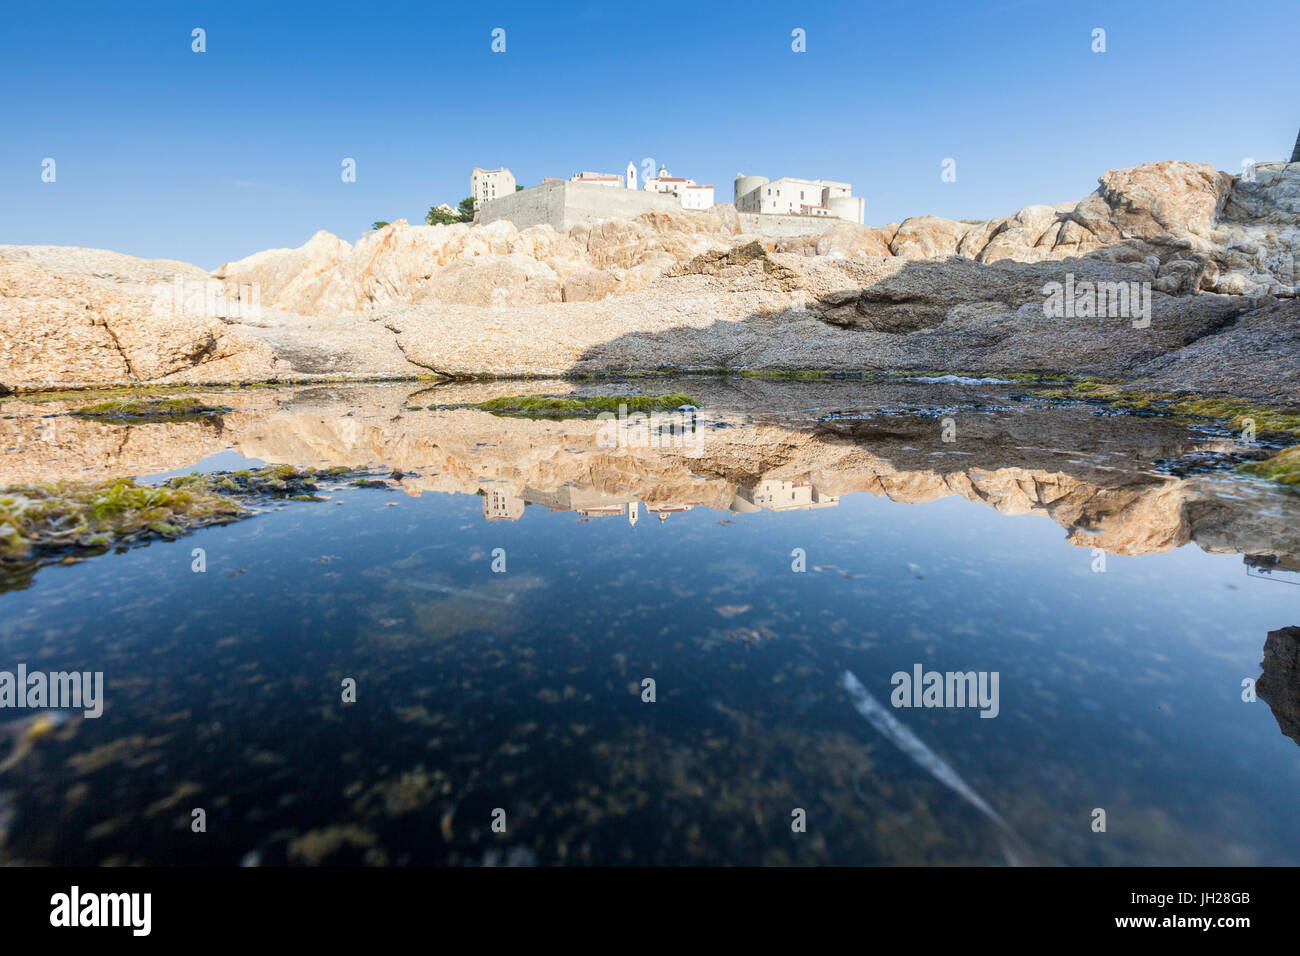 Die alte befestigte Zitadelle spiegelt sich in das blaue Meer, Calvi, Balagne Region, Korsika, Frankreich, Mittelmeer, Europa Stockfoto